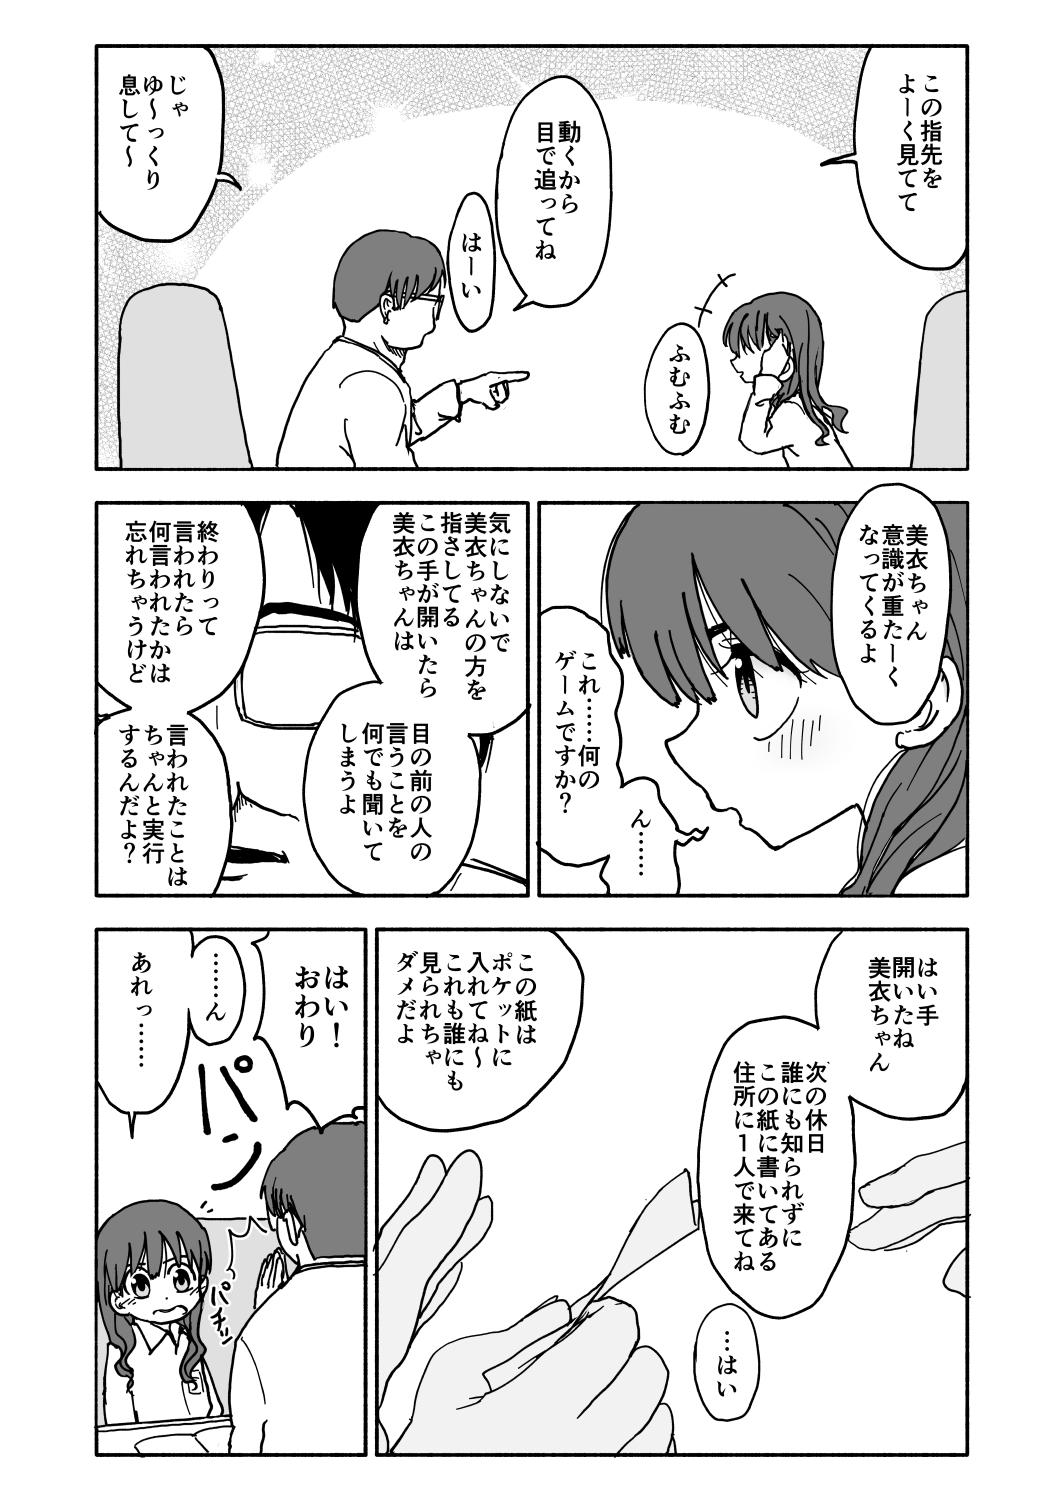 Whatsapp Okasi Tsukuri Idol ☆ Gimi ! Kankin choukyo manga Novinho - Page 13